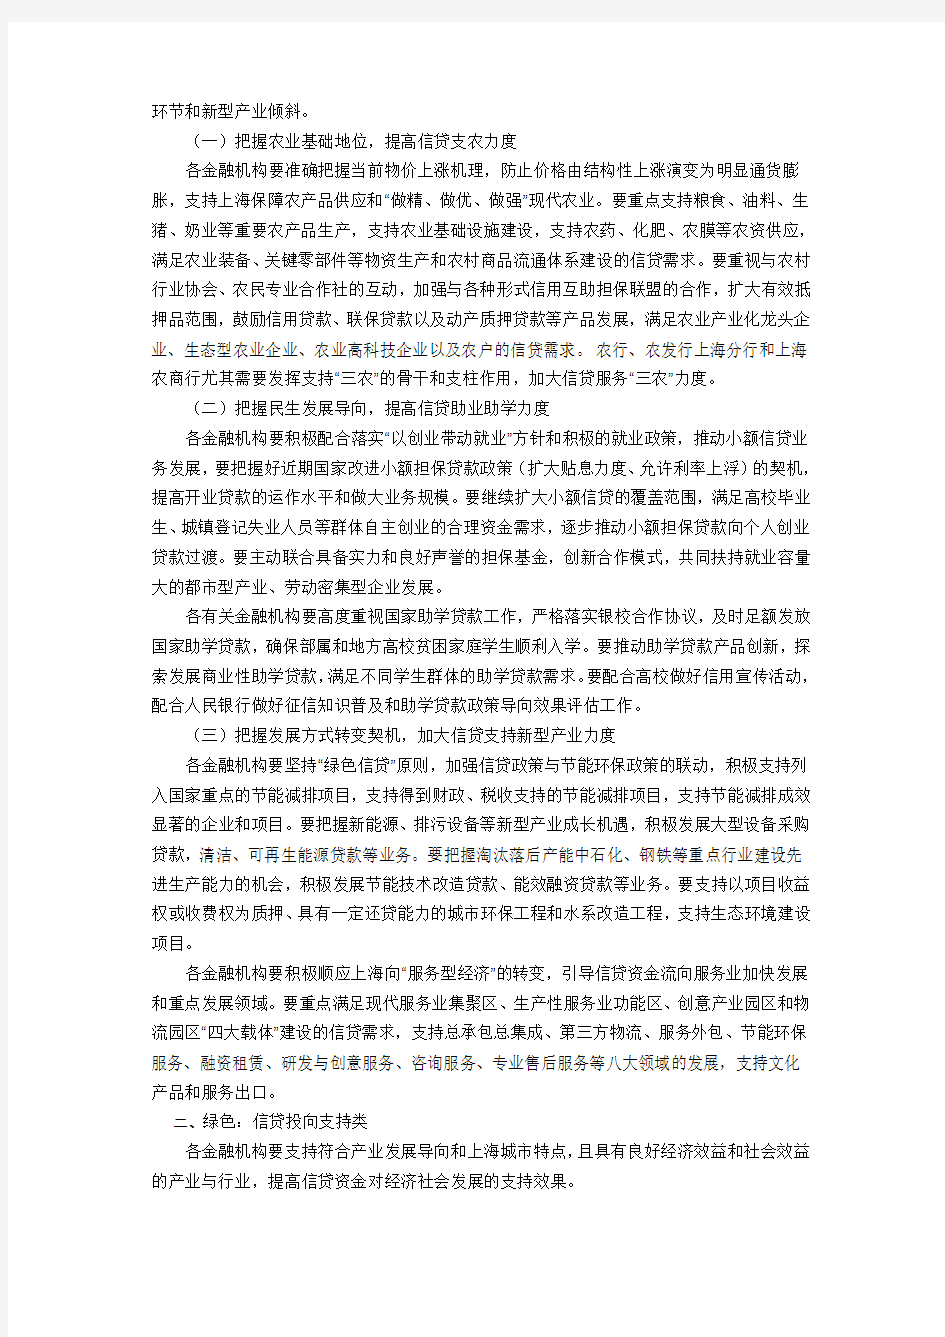 上海市信贷投向指引(2008年修订)